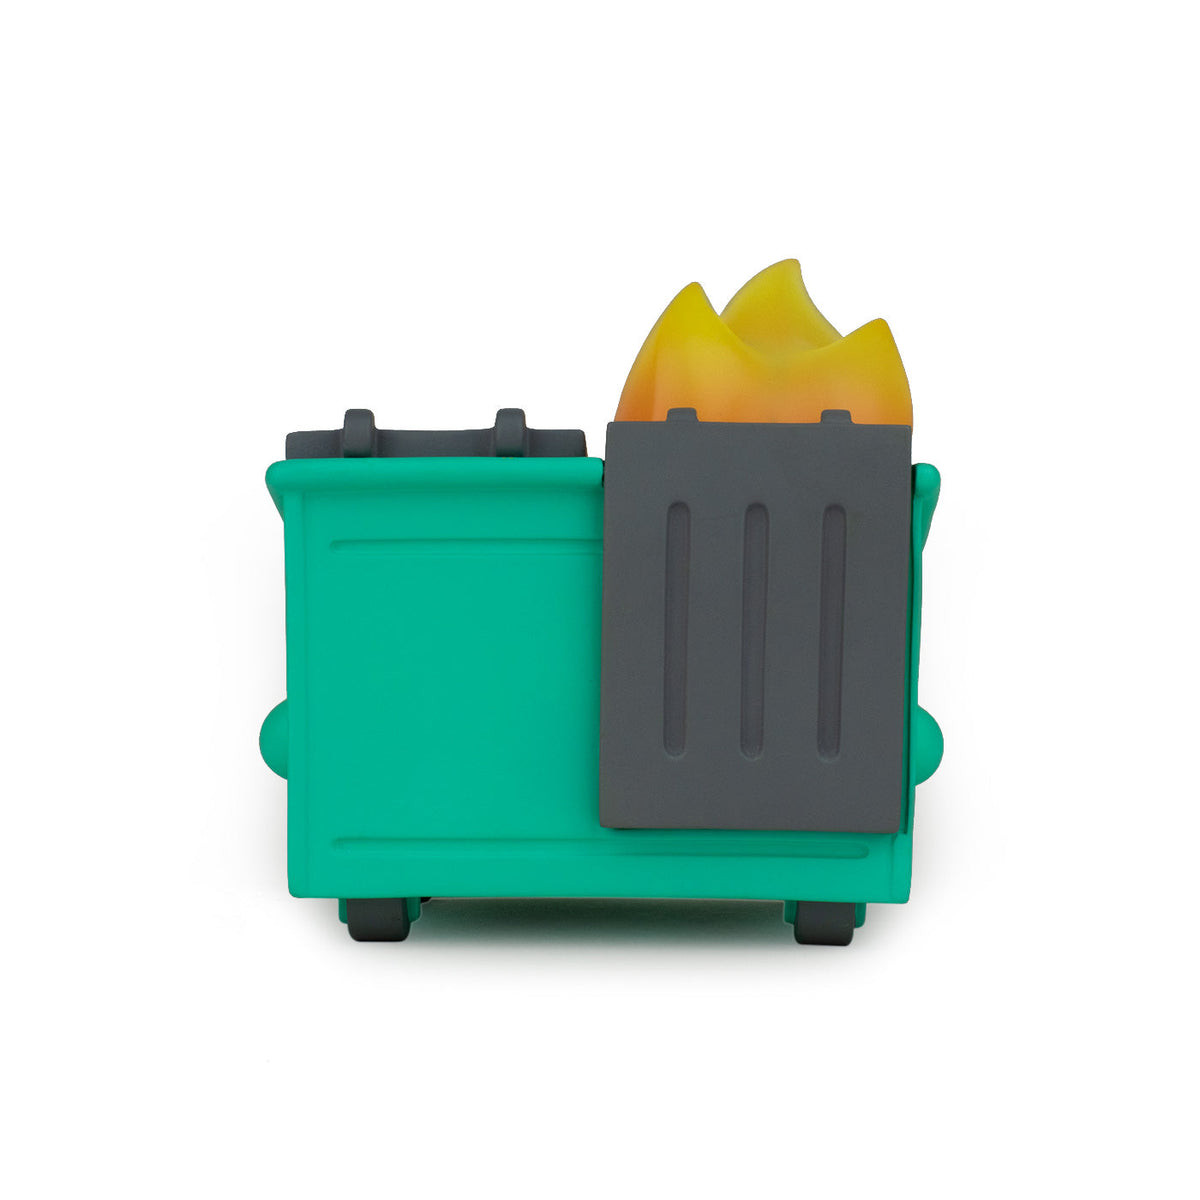 Dumpster Fire Vinyl Figure